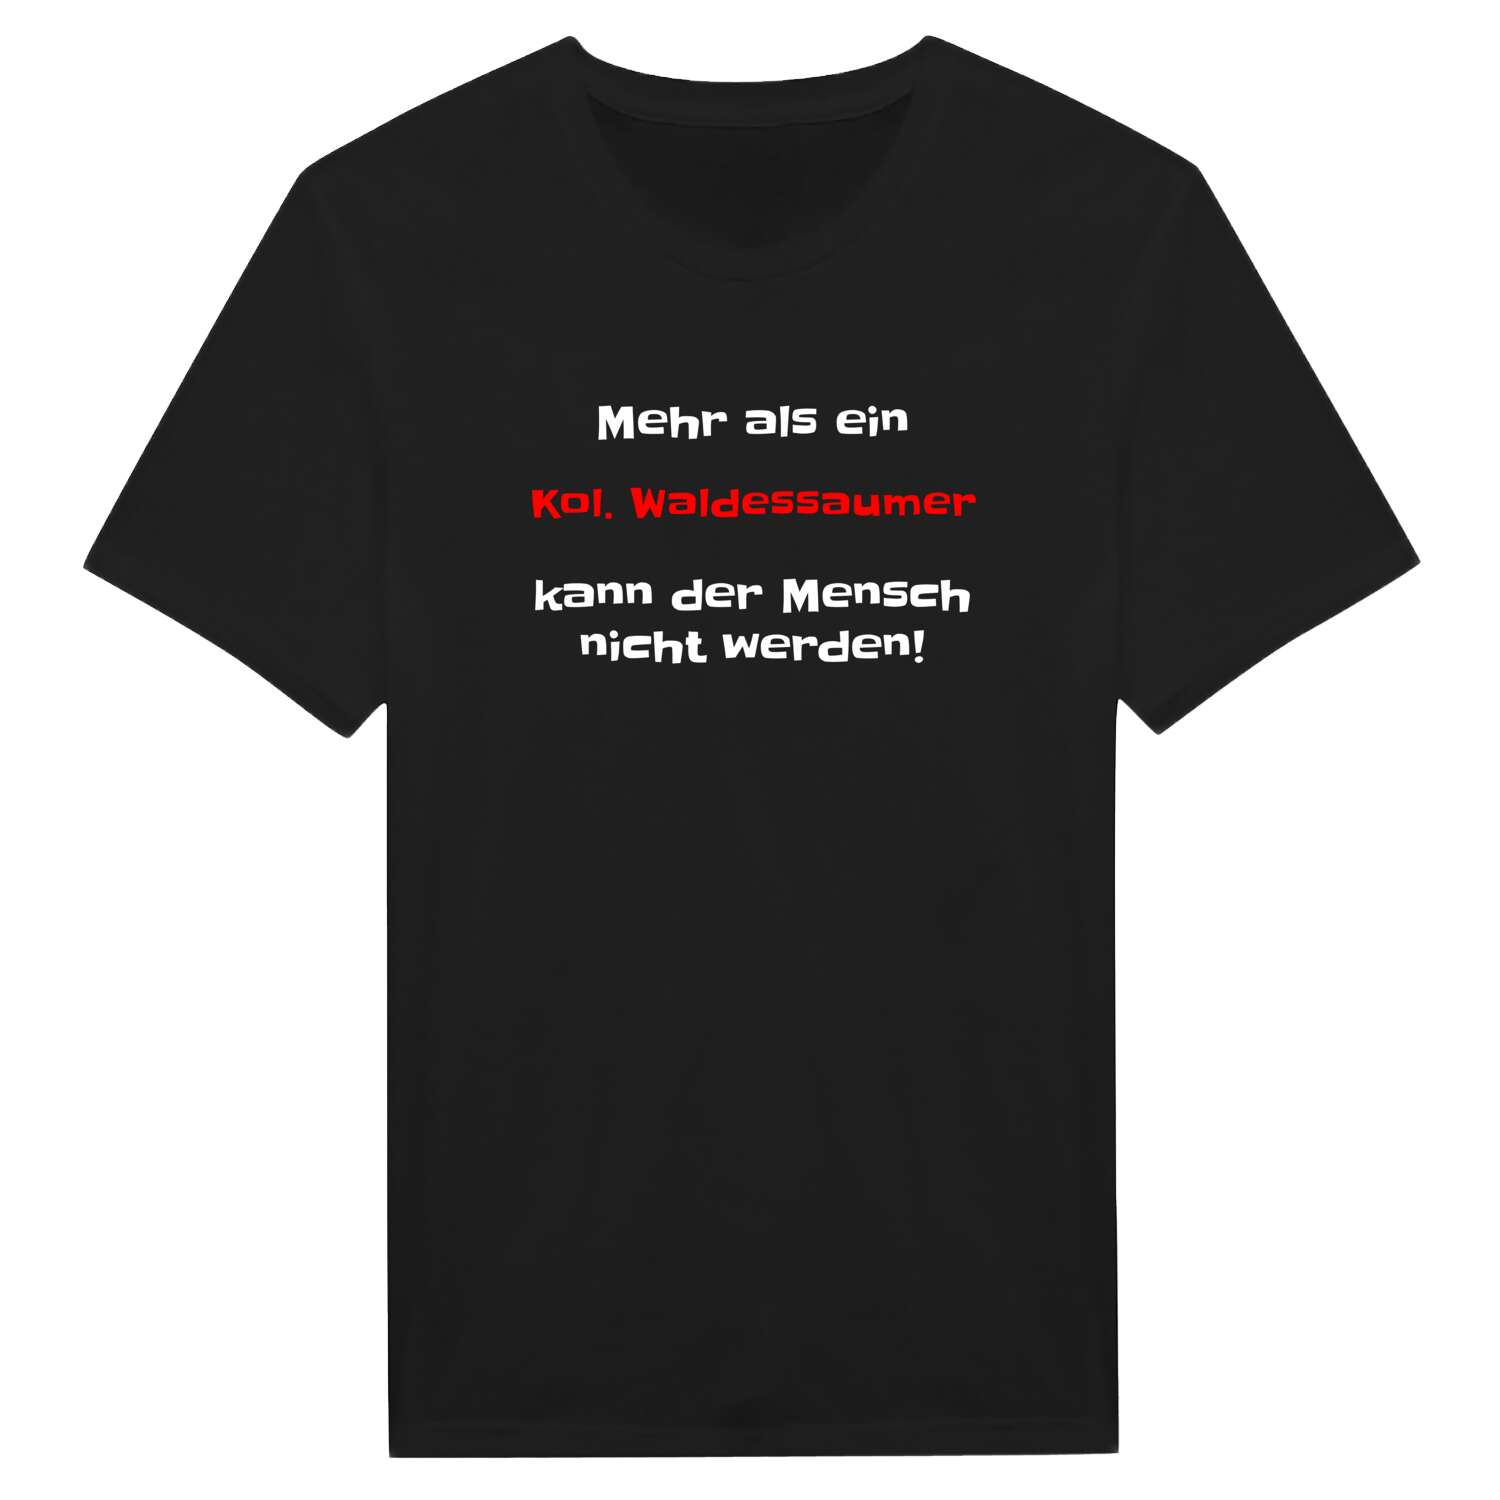 Kol. Waldessaum T-Shirt »Mehr als ein«